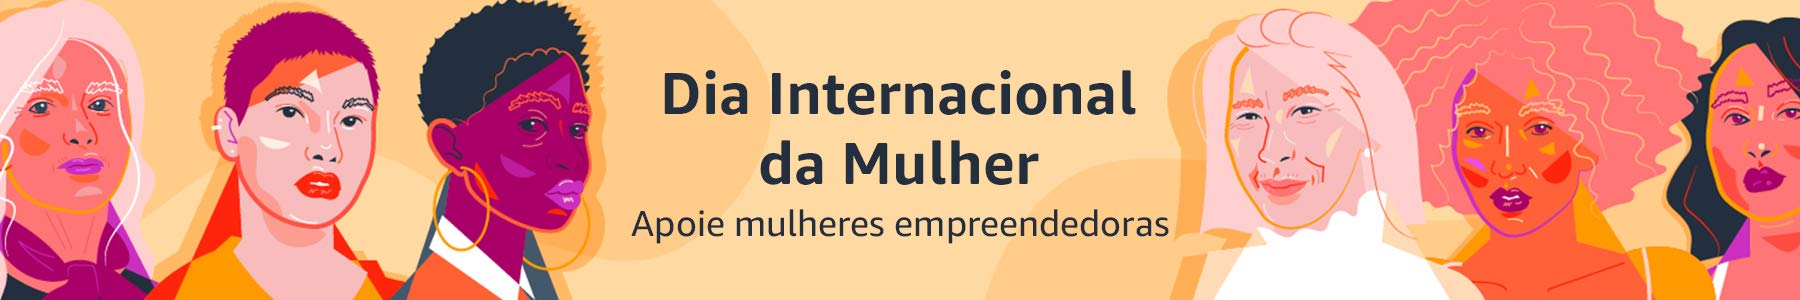 Dia da Mulher: Amazon celebra apoiando negócios liderados por empreendedoras